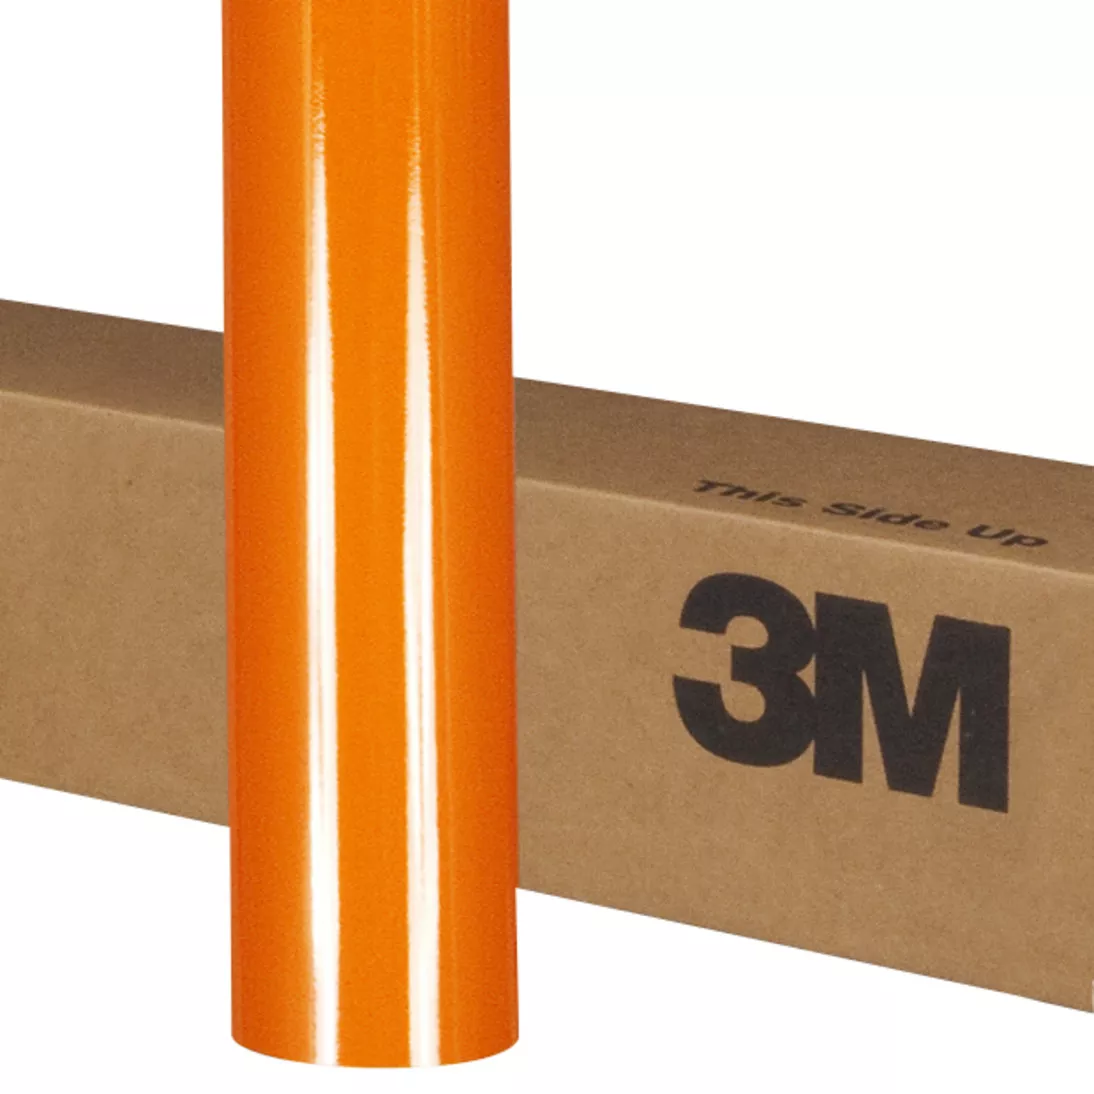 3M™ Scotchlite™ Reflective Graphic Film 5100R-14, Orange, 48 in x 25 yd,
1 Roll/Case